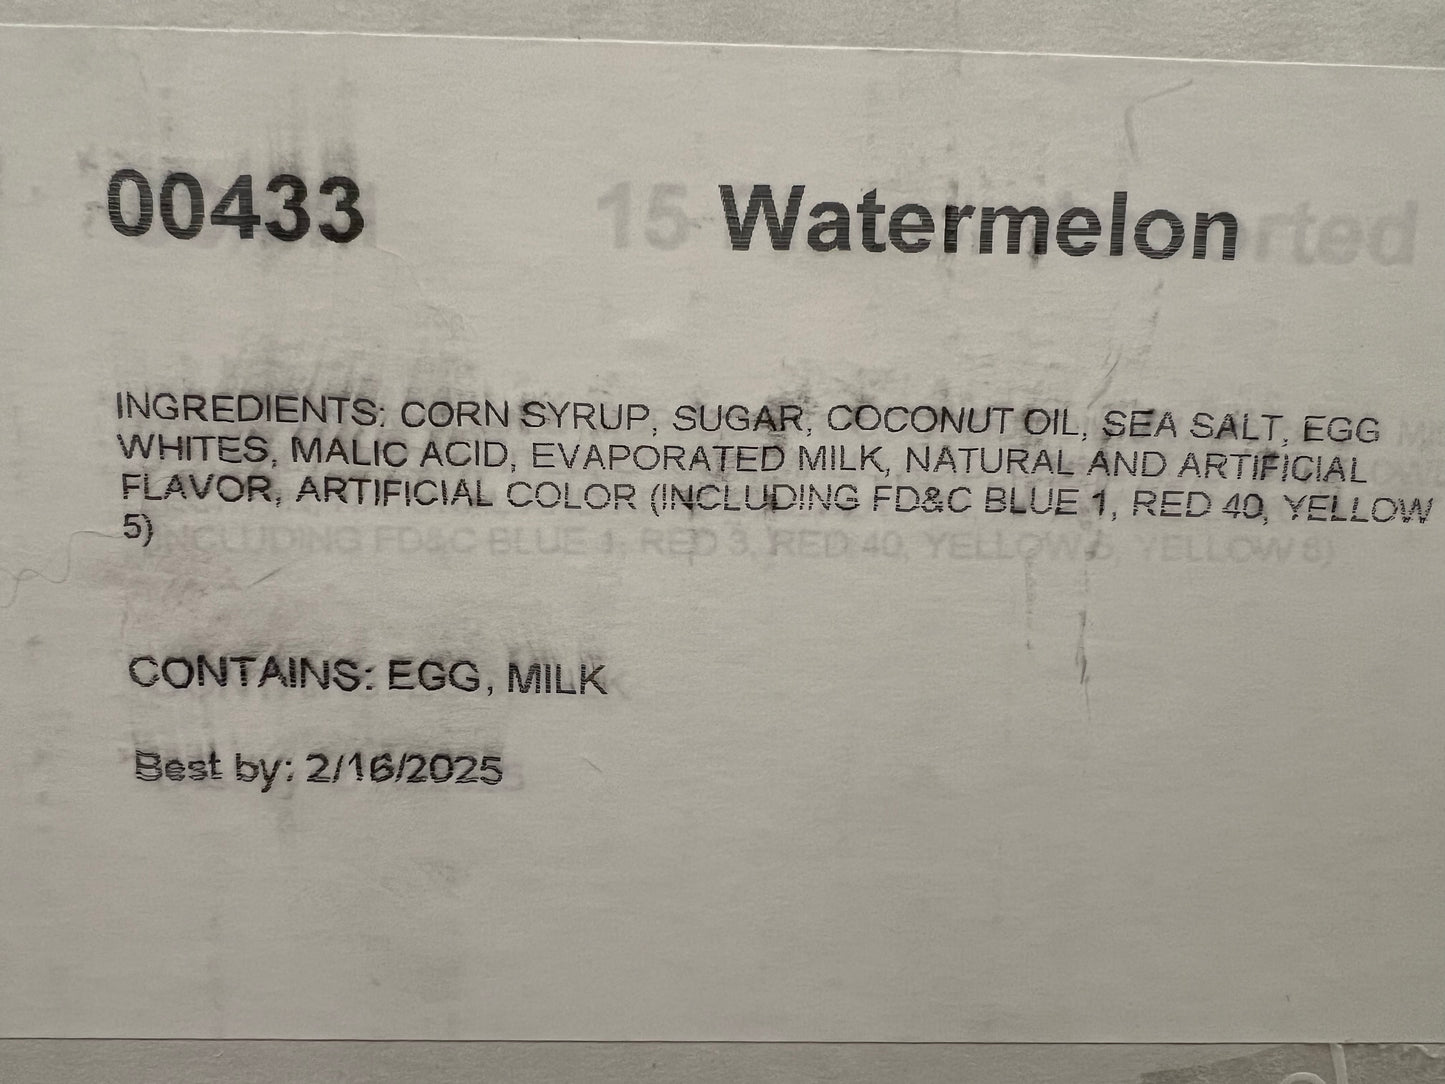 Watermelon taffy - 2.5 pound